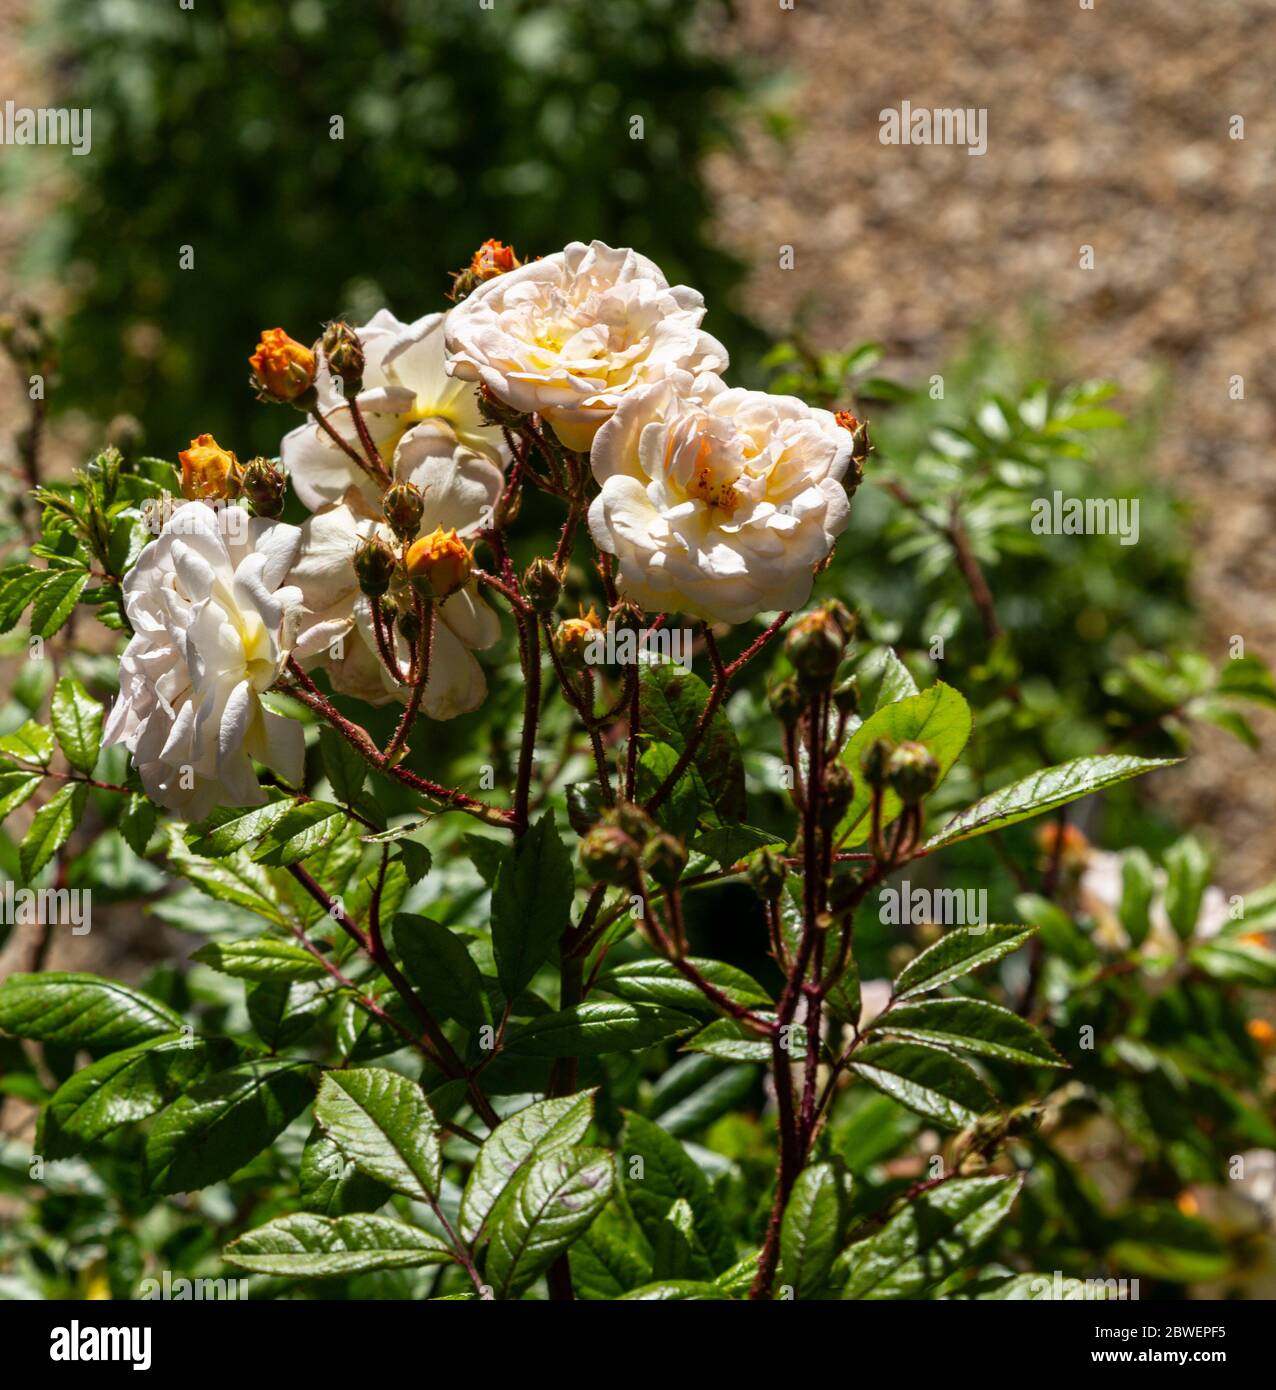 Rose 'Ghislaine de Feligonde', une rose de Musk Rambling grimpant sur un balcon. Fleurs d'abricot/blanc semi-double parfumées. Dans le bourgeon et la fleur. Banque D'Images